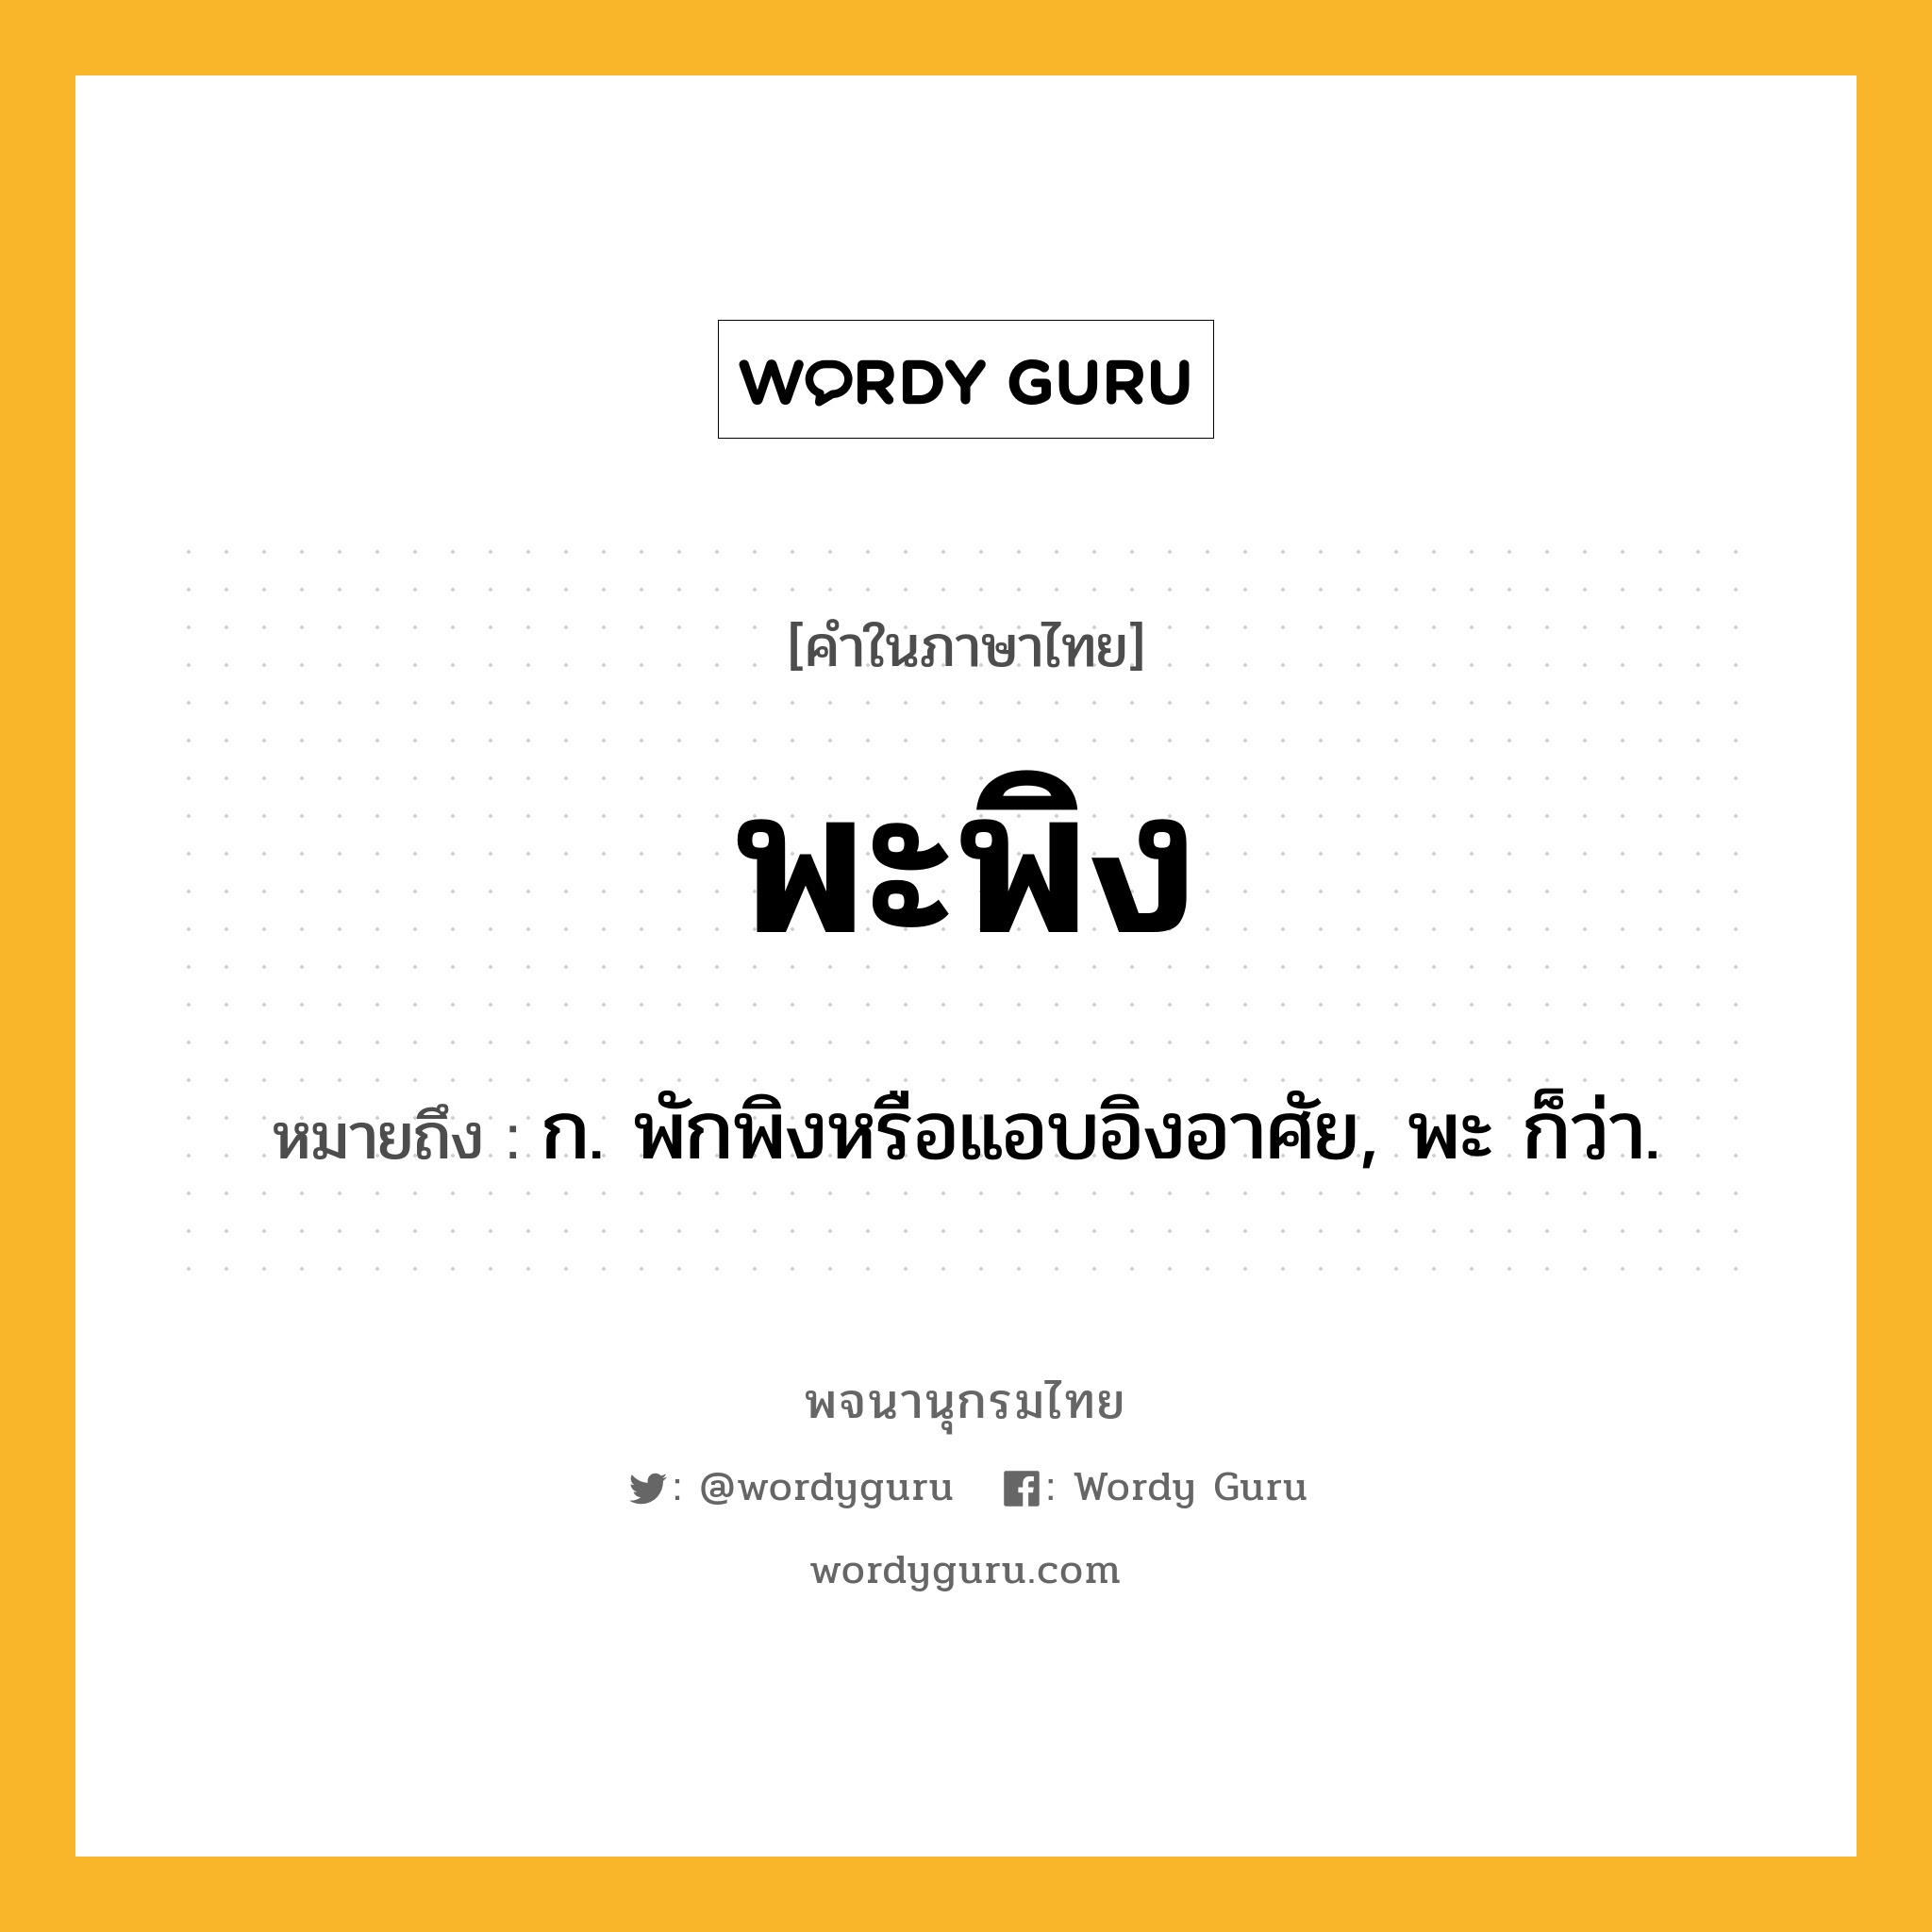 พะพิง ความหมาย หมายถึงอะไร?, คำในภาษาไทย พะพิง หมายถึง ก. พักพิงหรือแอบอิงอาศัย, พะ ก็ว่า.